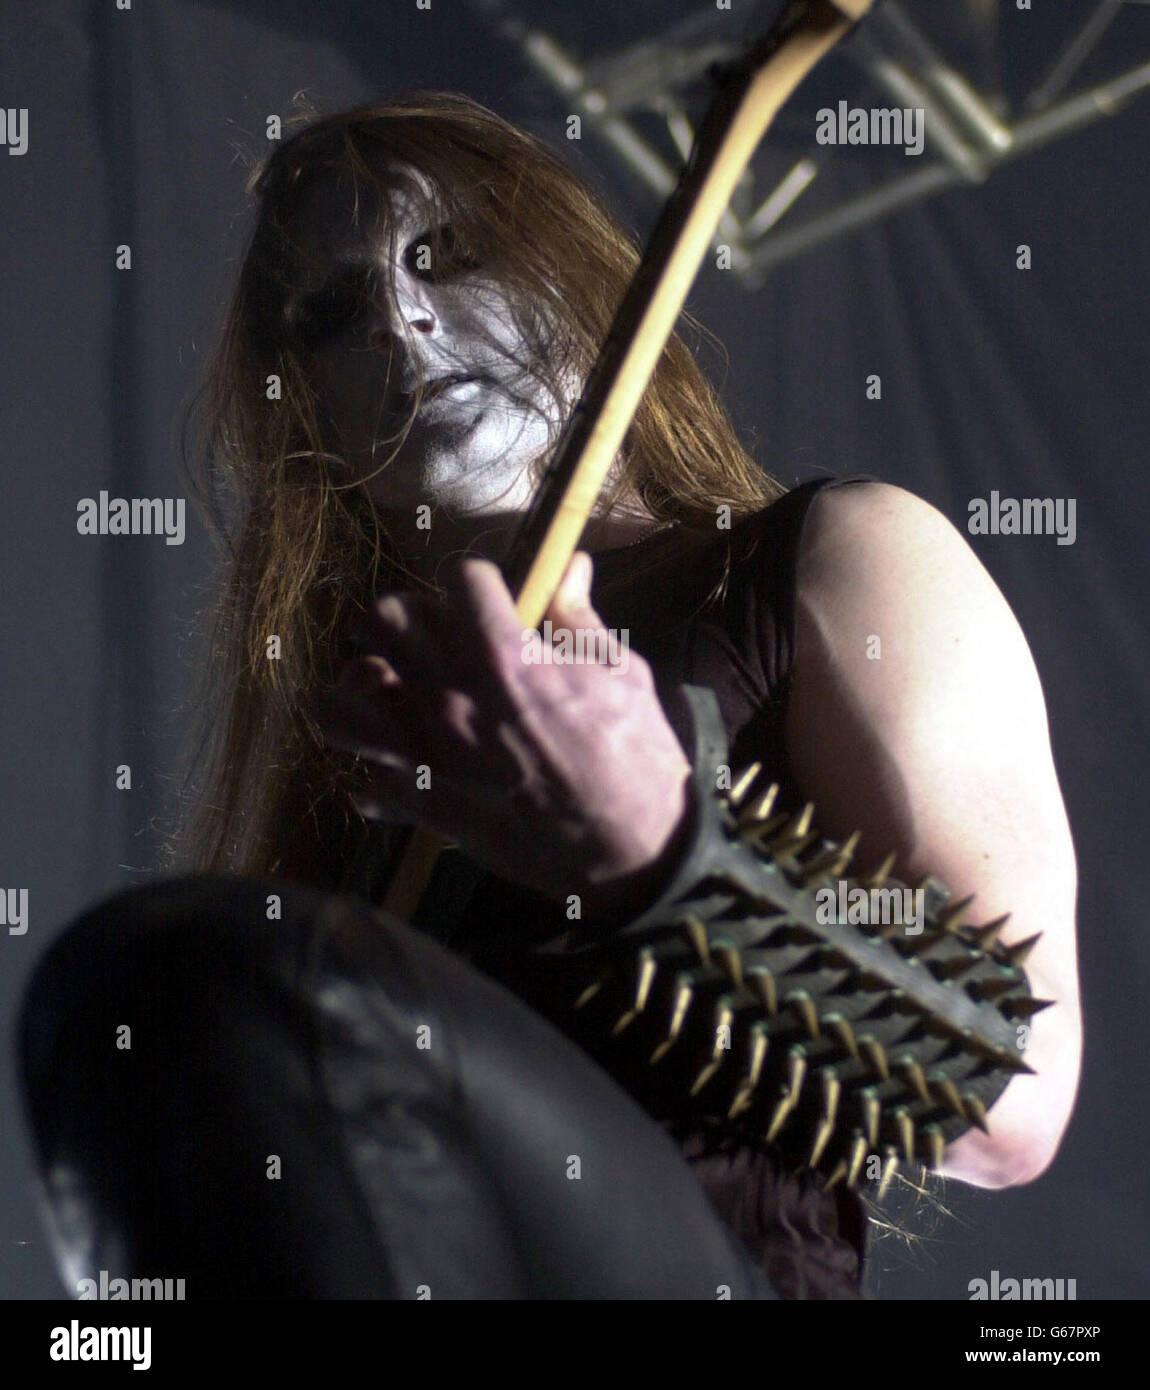 Der Frontmann der norwegischen Black Metal Band Satyricon spielt im Temple Bar Music Center in Dublin. Die für ihre Flirtationen mit Devil Worship und White Face Paint bekannte Gruppe ist seit gut zehn Jahren zusammen und tourt derzeit durch Europa. Stockfoto